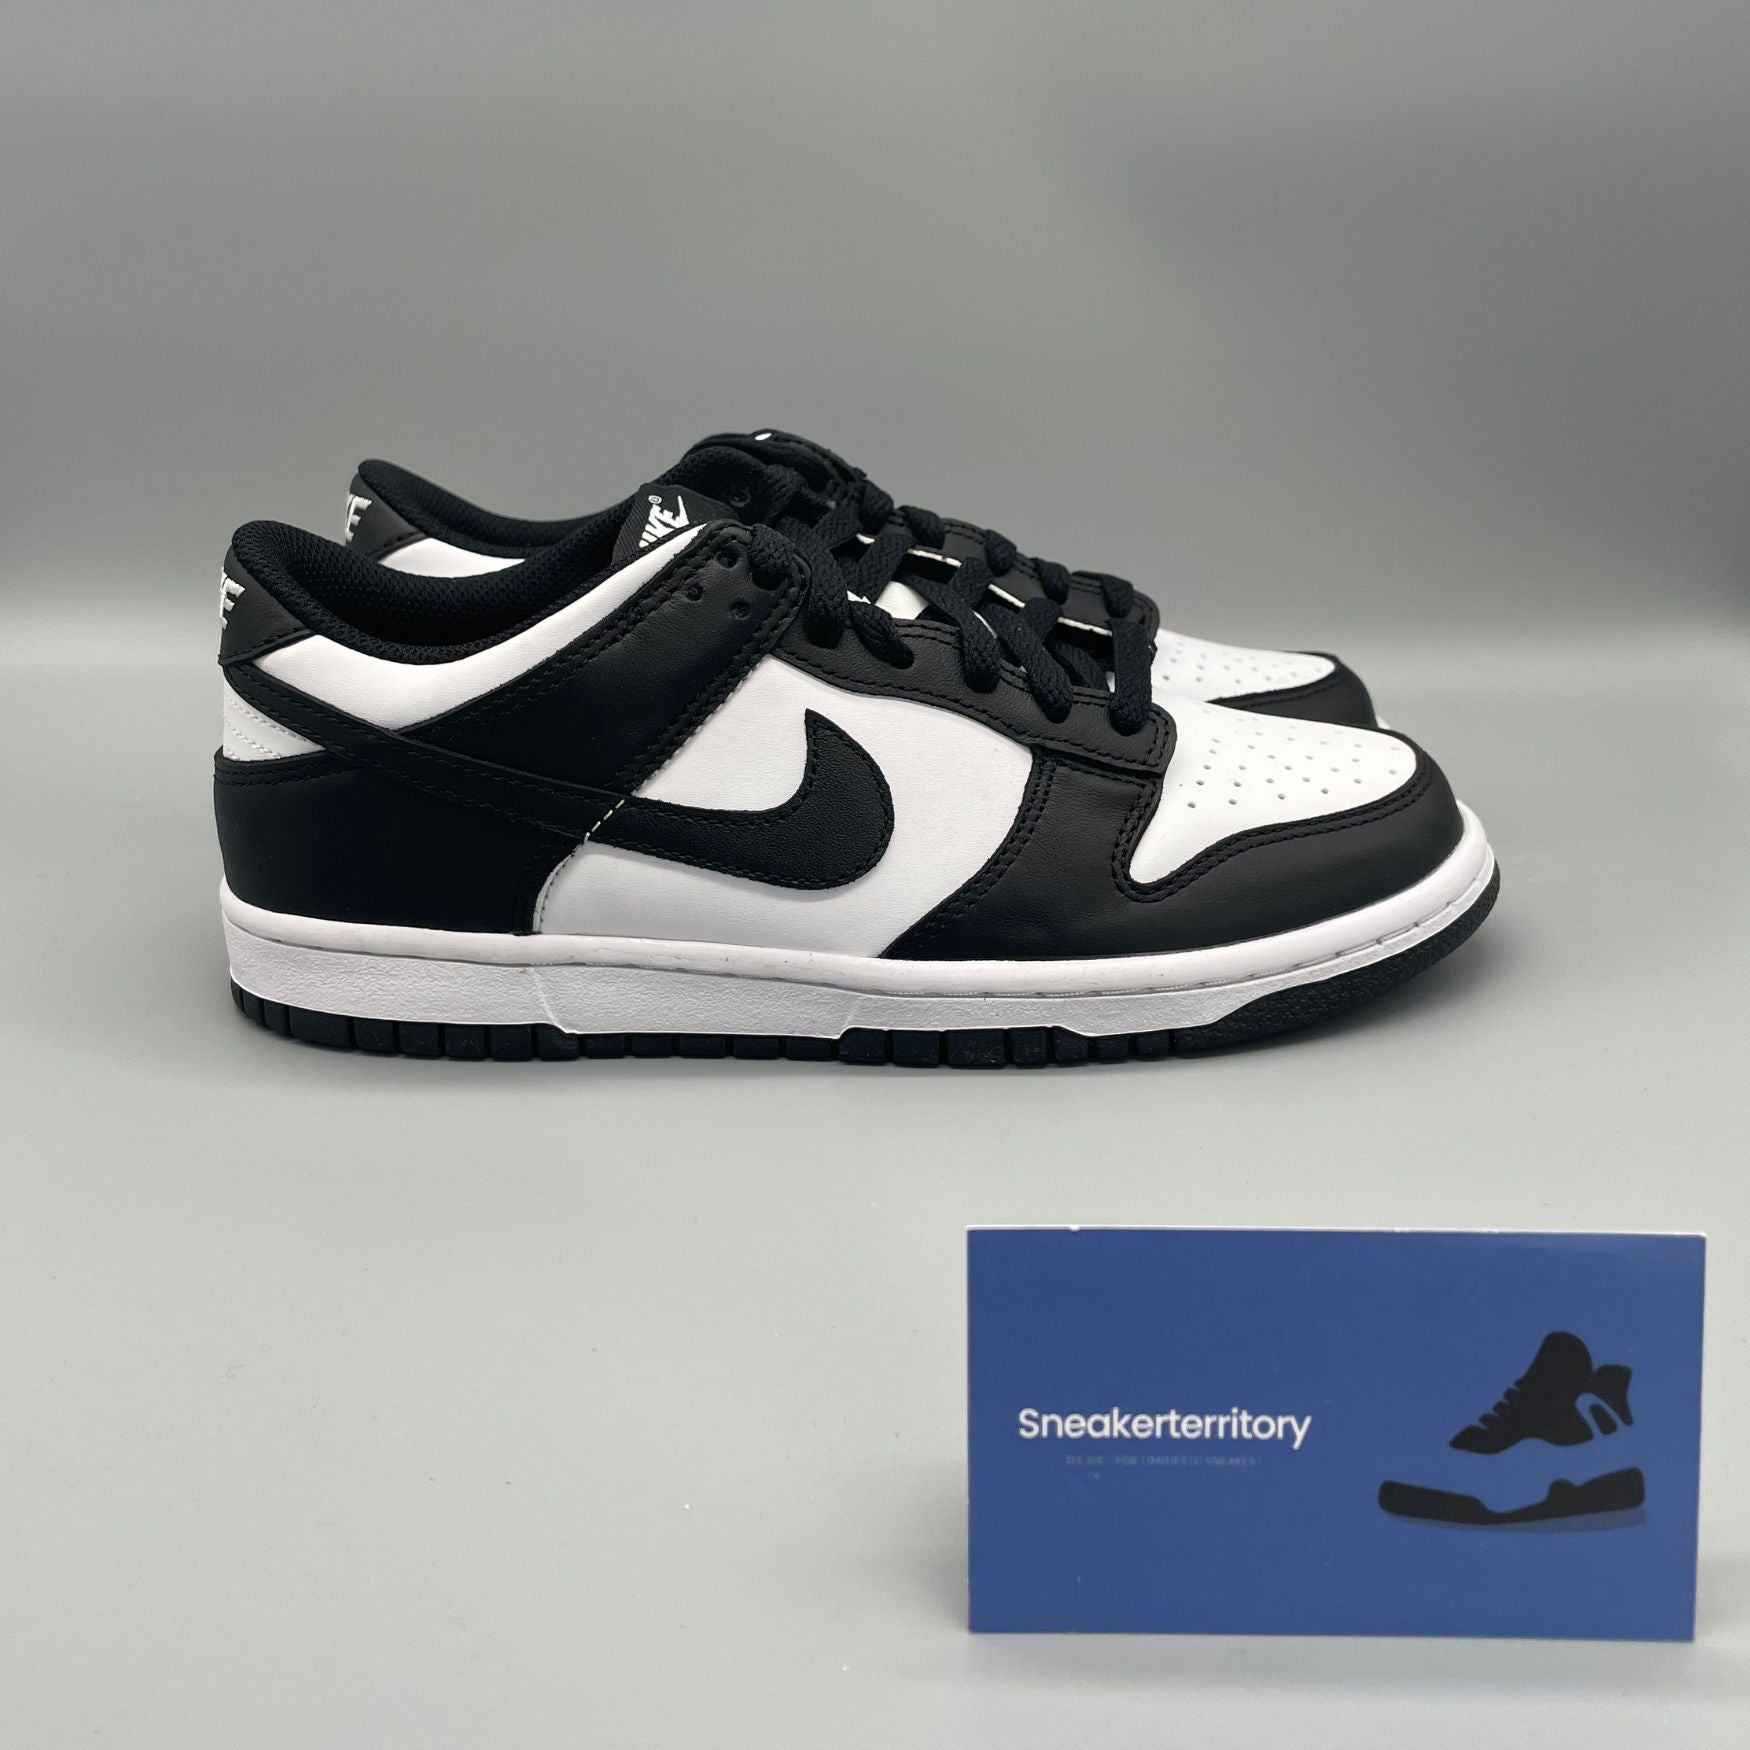 Nike Dunk Low Panda (GS) - Sneakerterritory; Sneaker Territory 4